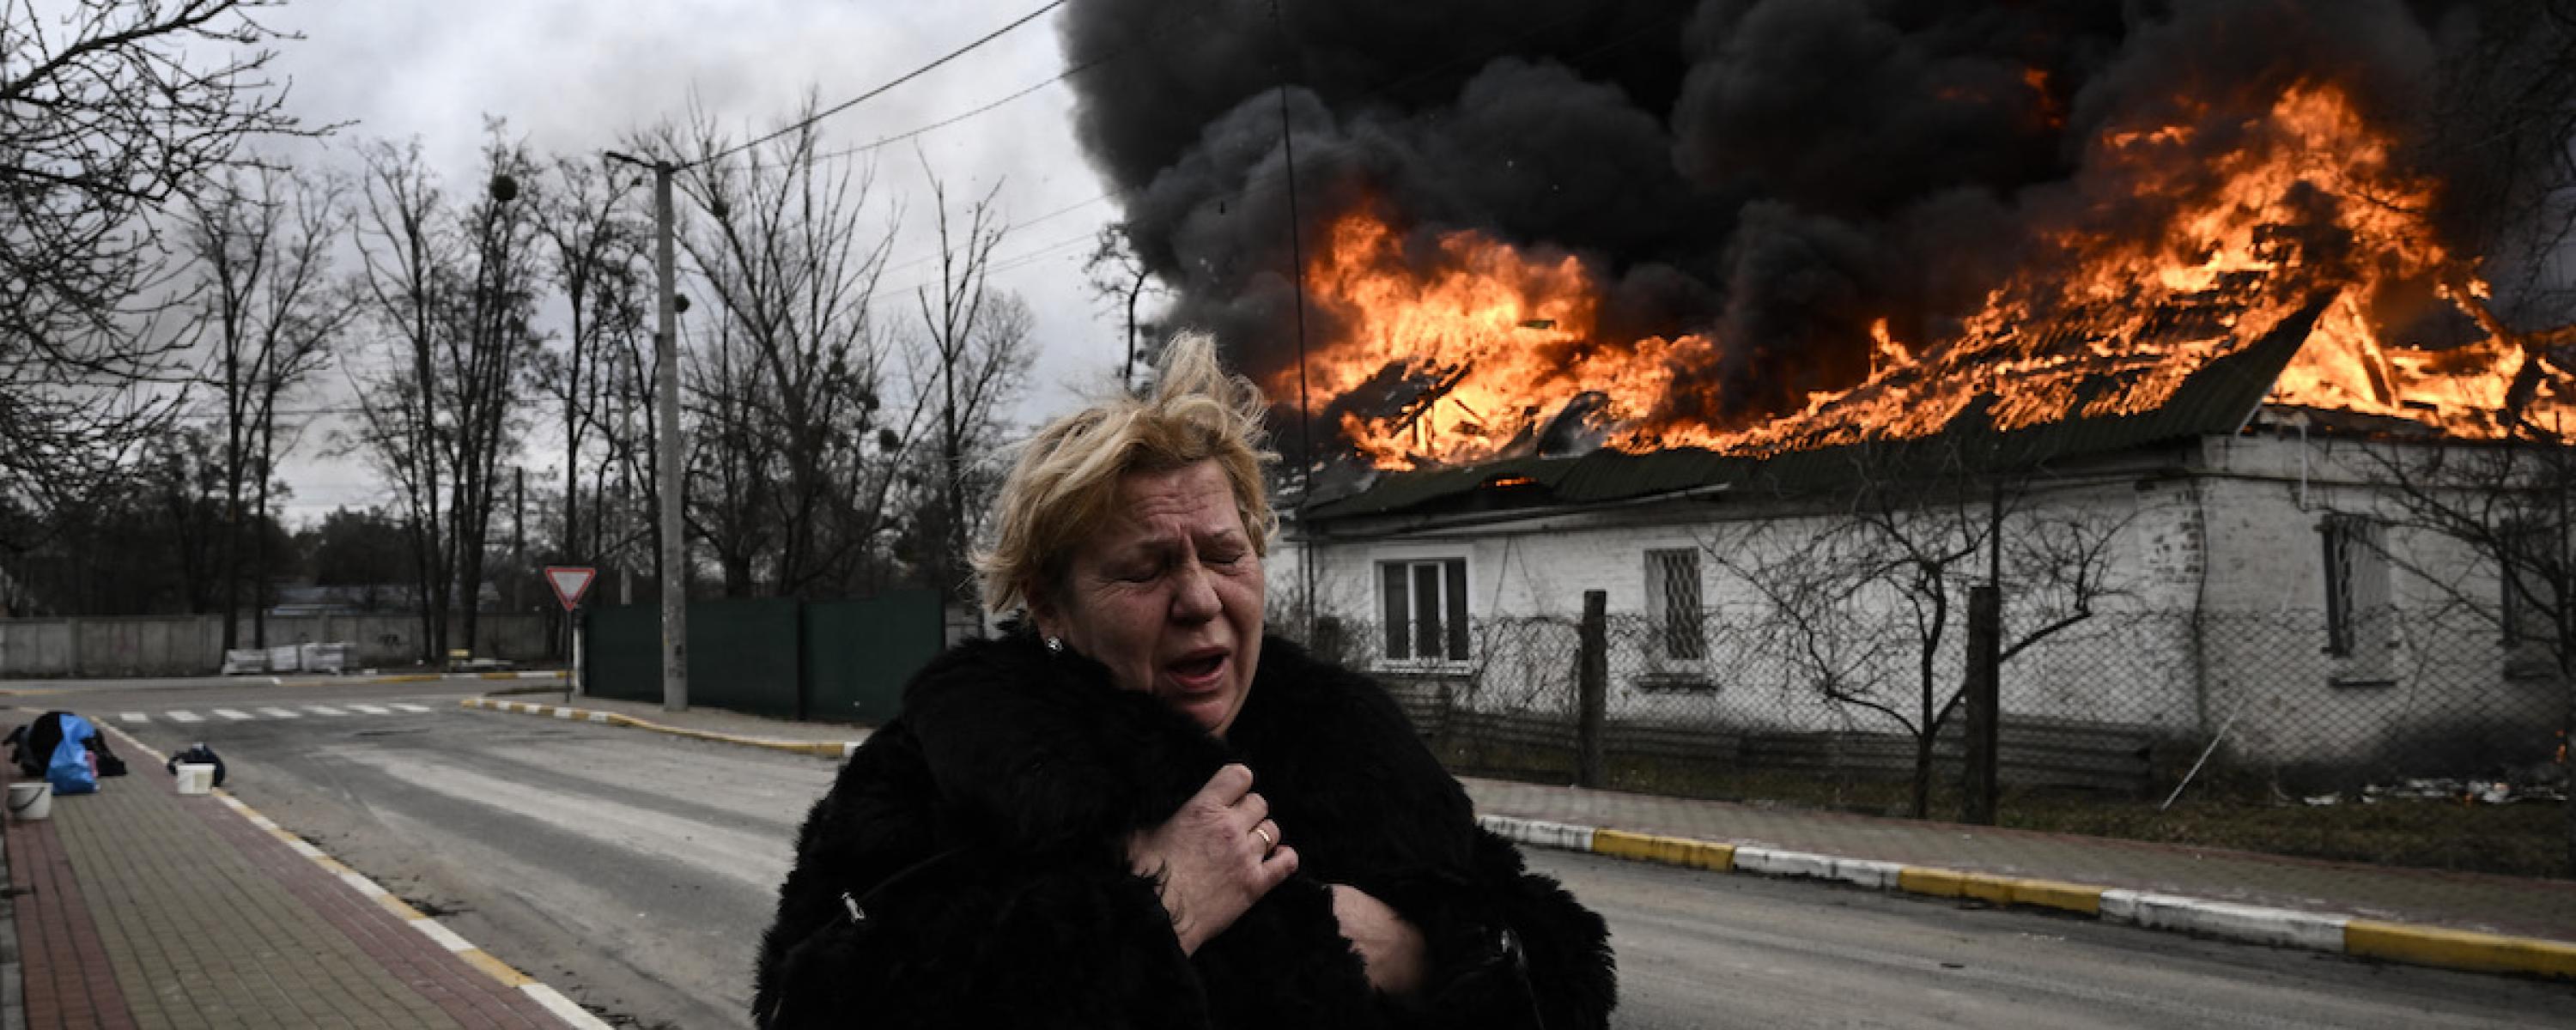 Eine trauernde Frau steht vor einem brennenden Wohngebäude.